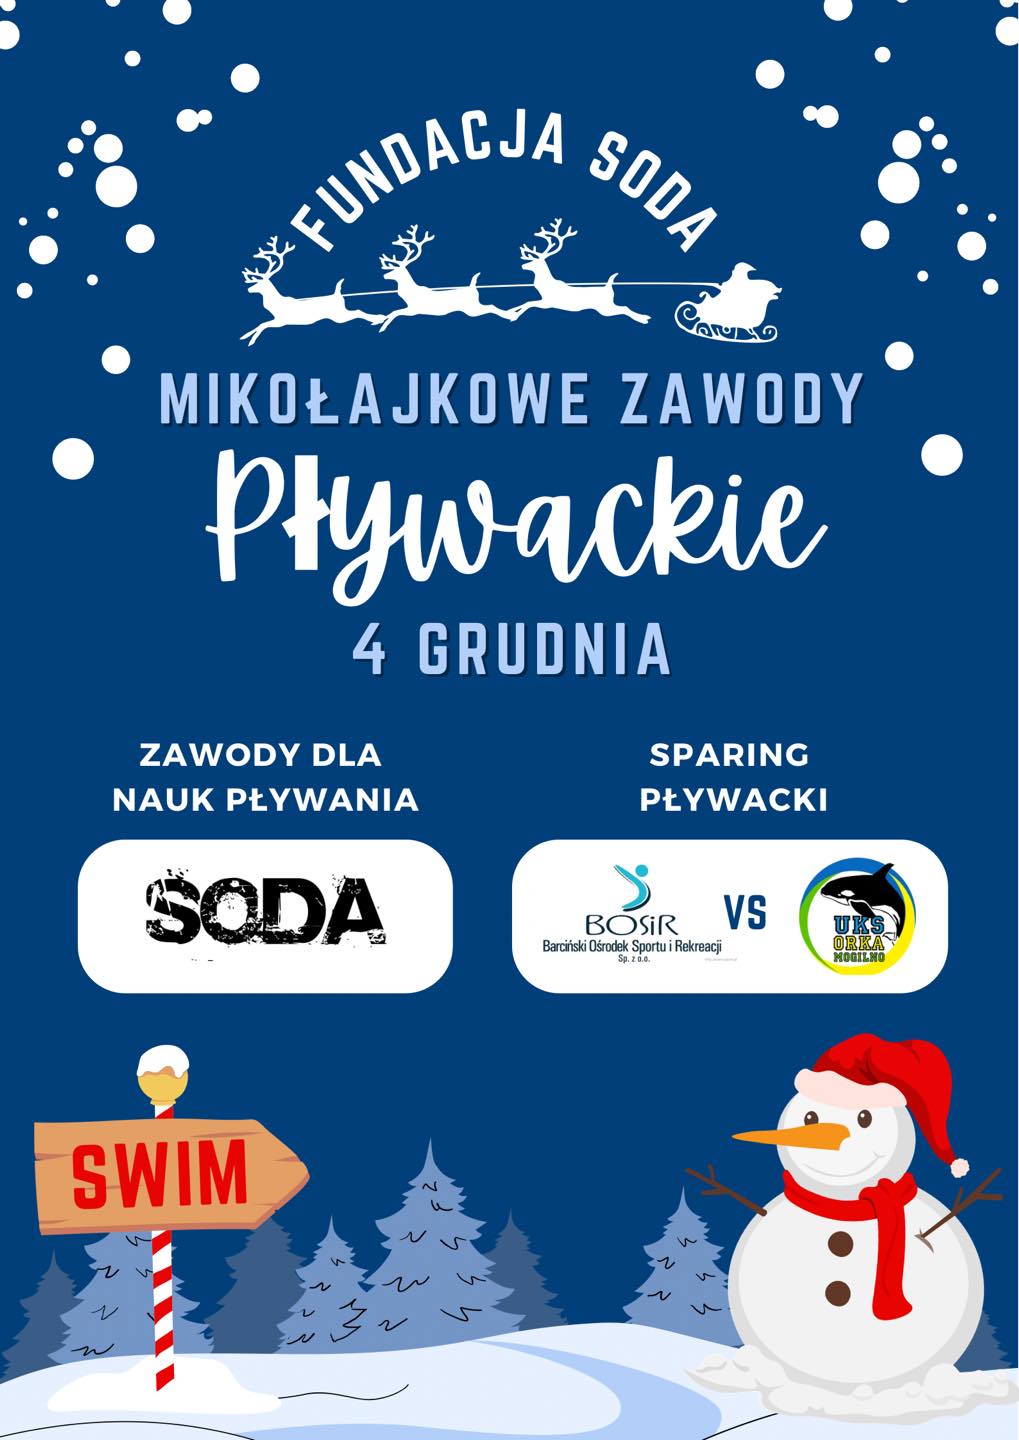 You are currently viewing Mikołajkowe zawody pływackie 04.12.2022 Utrudnienia !